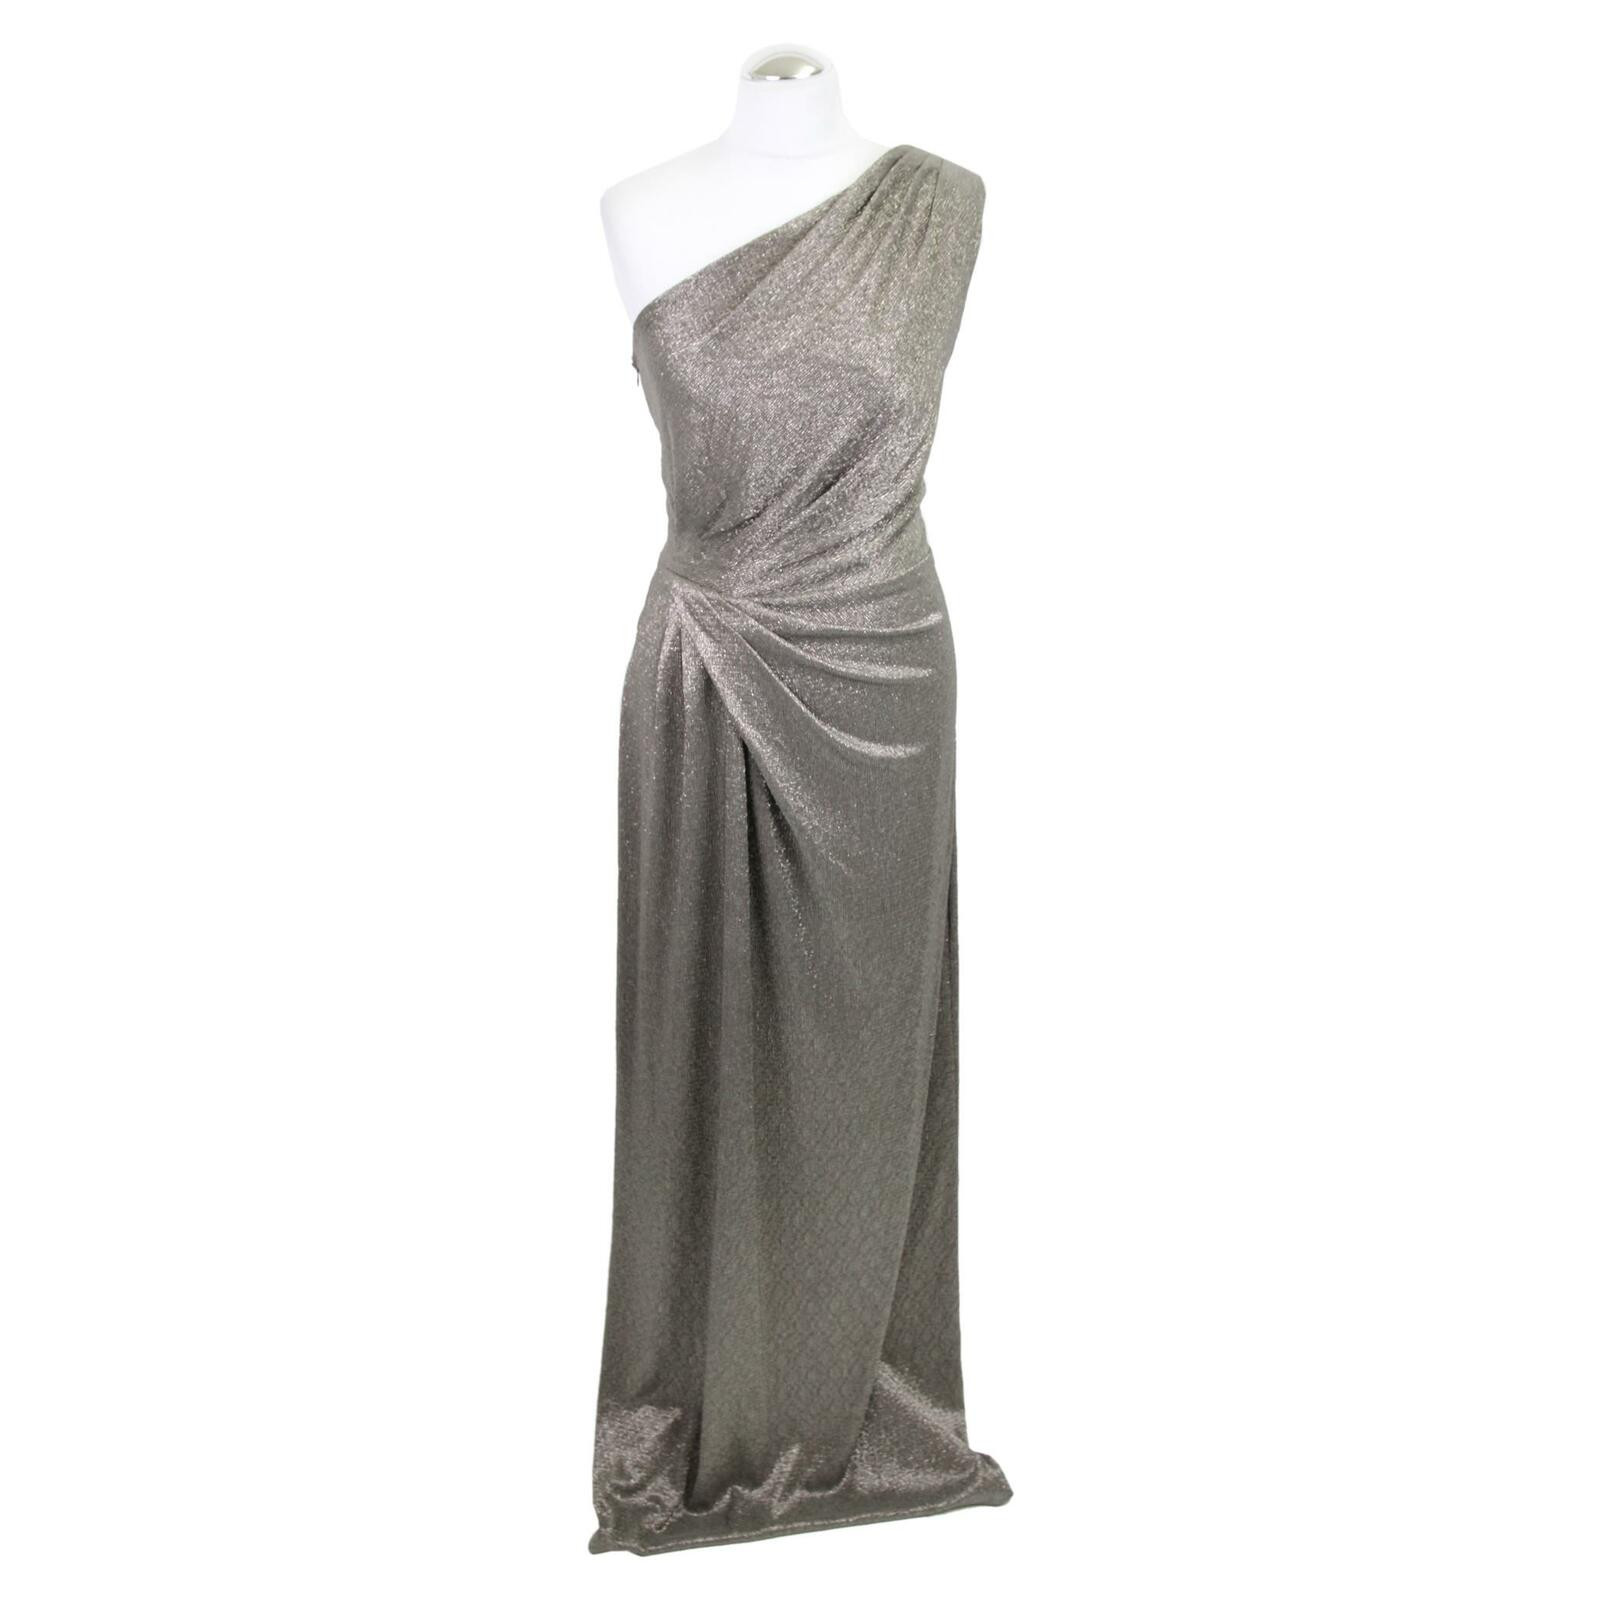 Ralph Lauren Kleid - Second Hand Ralph Lauren Kleid gebraucht kaufen für  159€ (5526816)